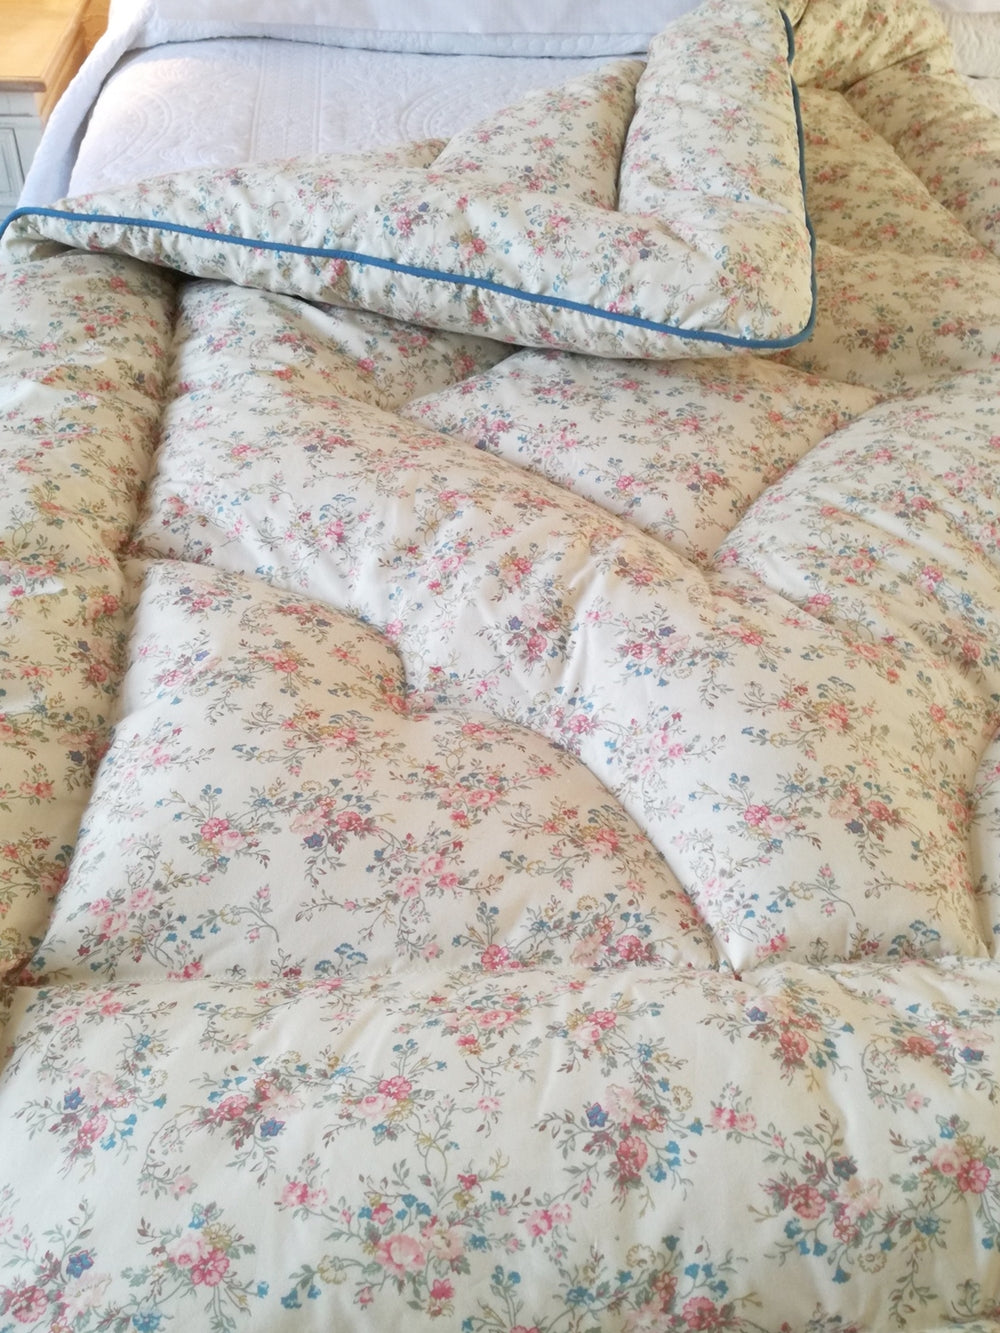 Prettiest Vintage Inspired Cream Fl Eiderdown Bedspread Quilt Uk Dearest Violet